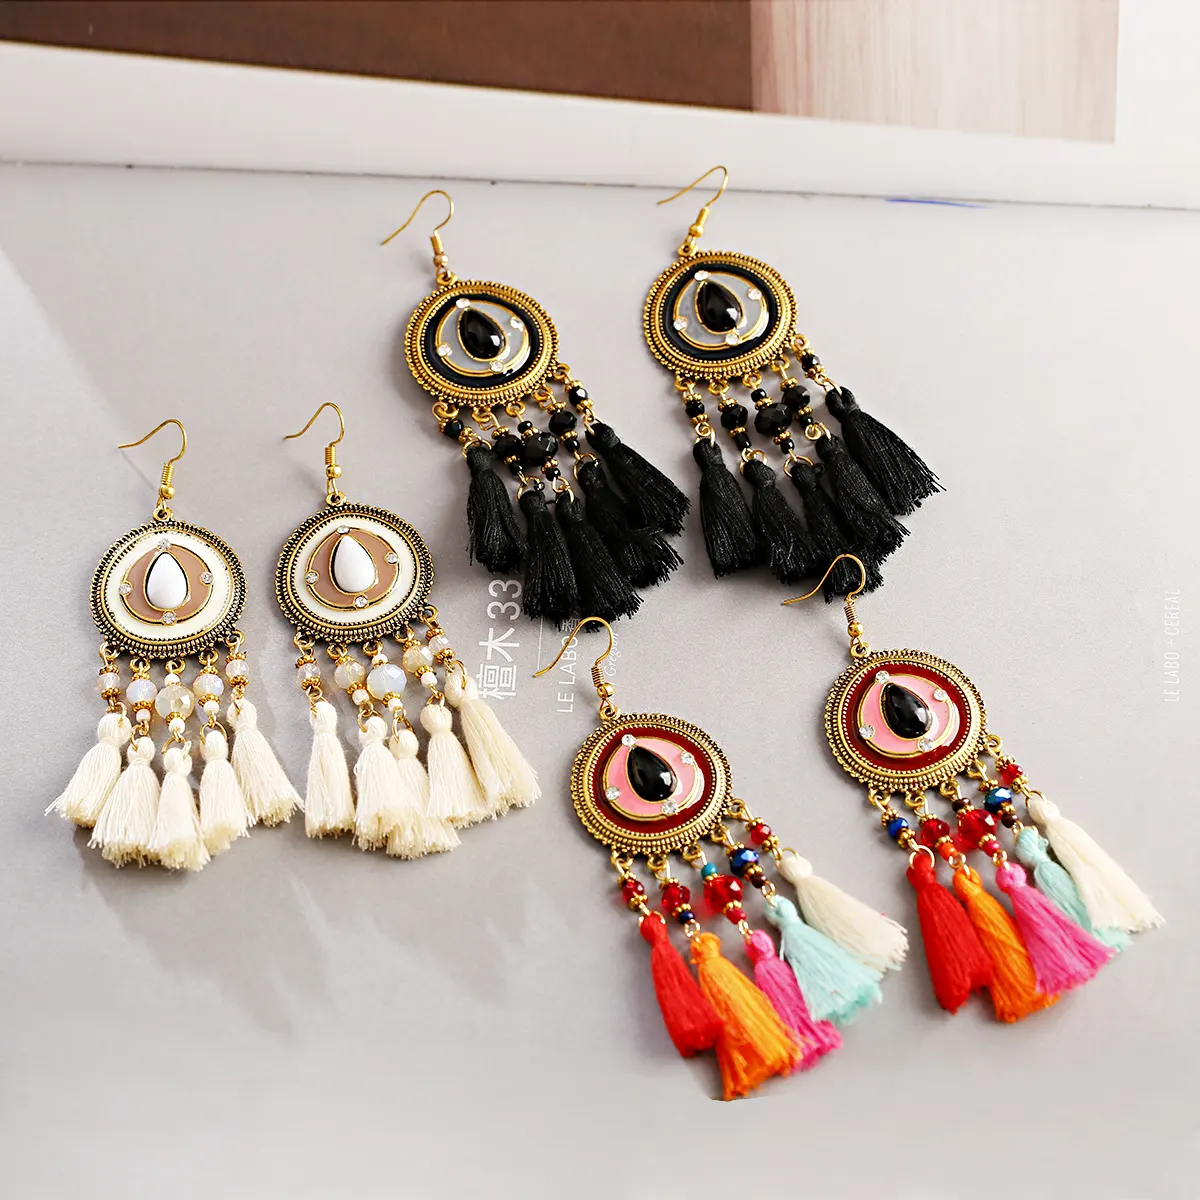 Boucles d'oreilles à pampilles colorées pour femmes, style bohémien, avec perles géométriques ethniques, pendantes, bijoux indiens, arabes, arabes, gitanes, nouveauté mode